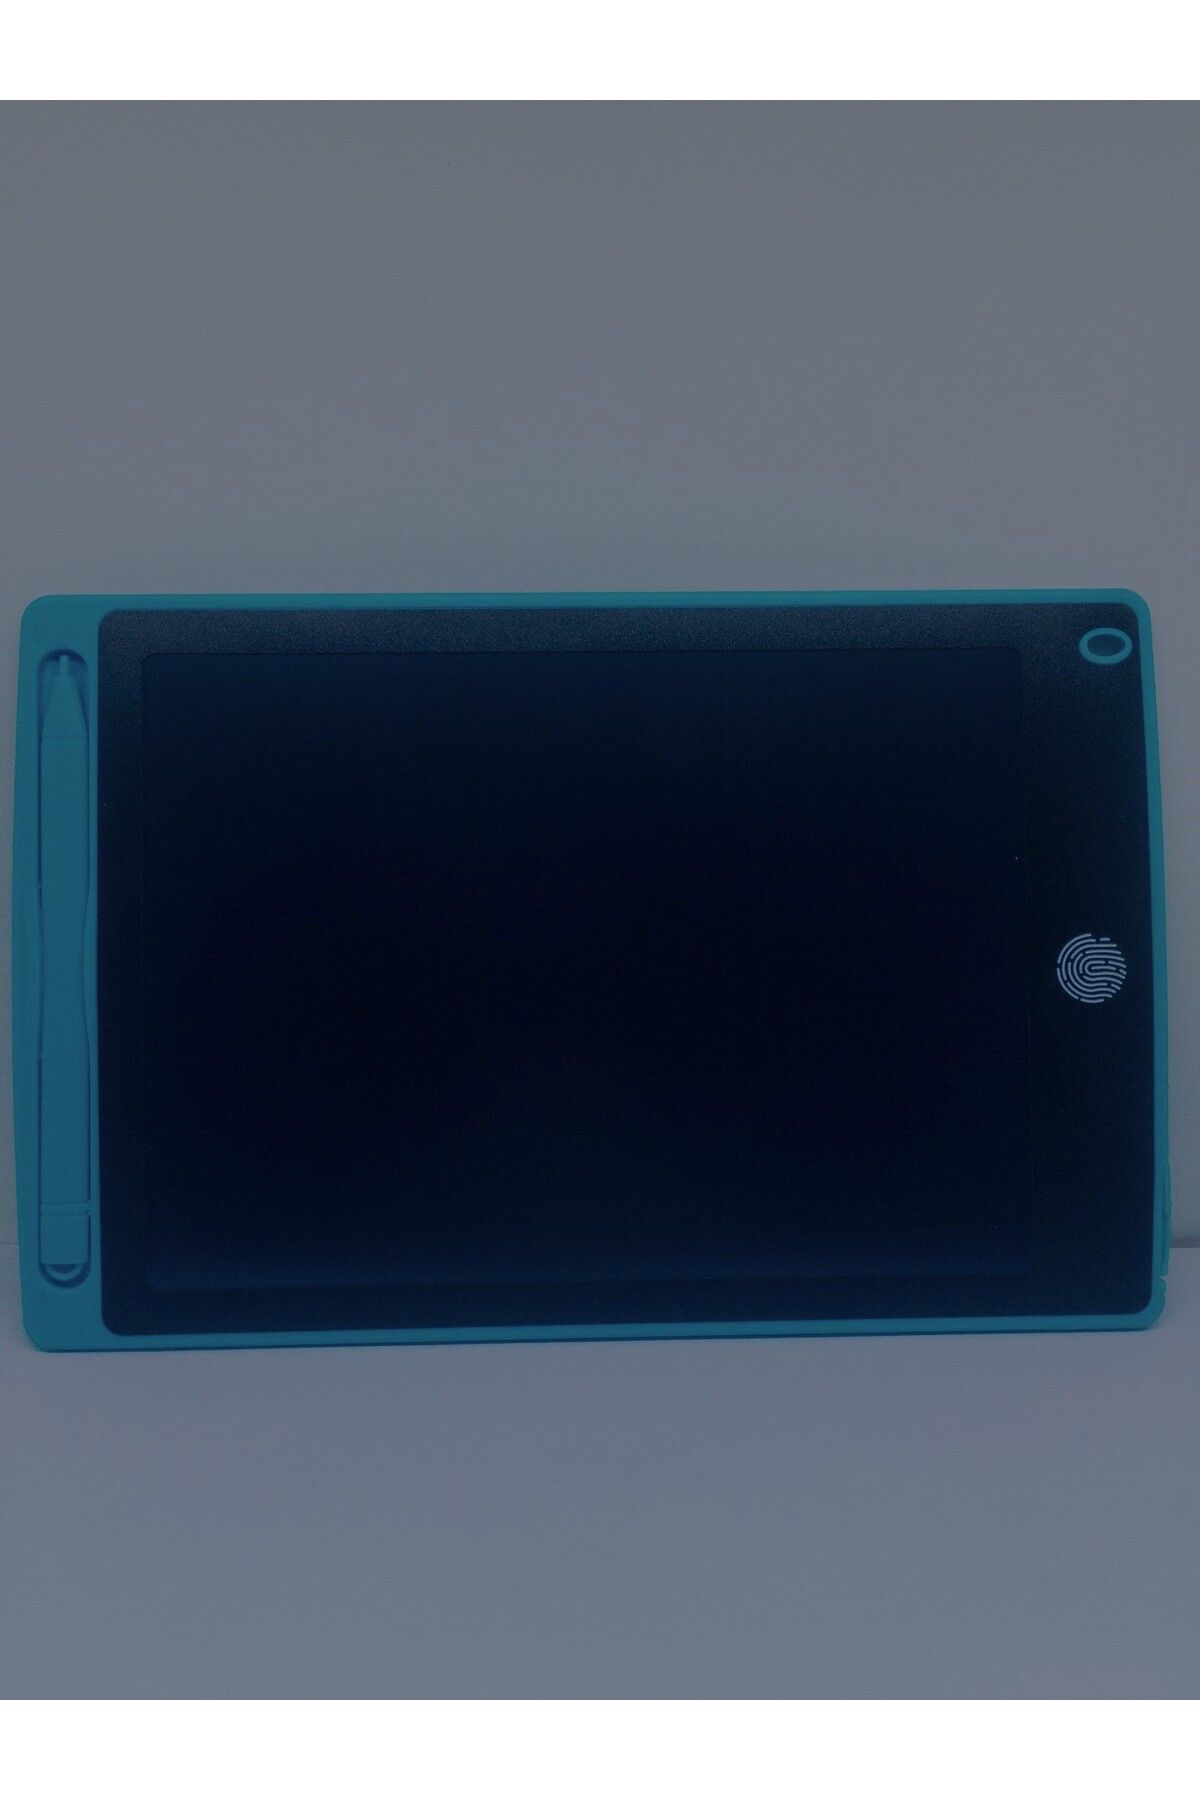 blackleg Çocuk Çizim Tableti 8,5 inç LCD Yaz Sil Tahta Oyun Dijital Kalemle Eğitici Tablet Oyun